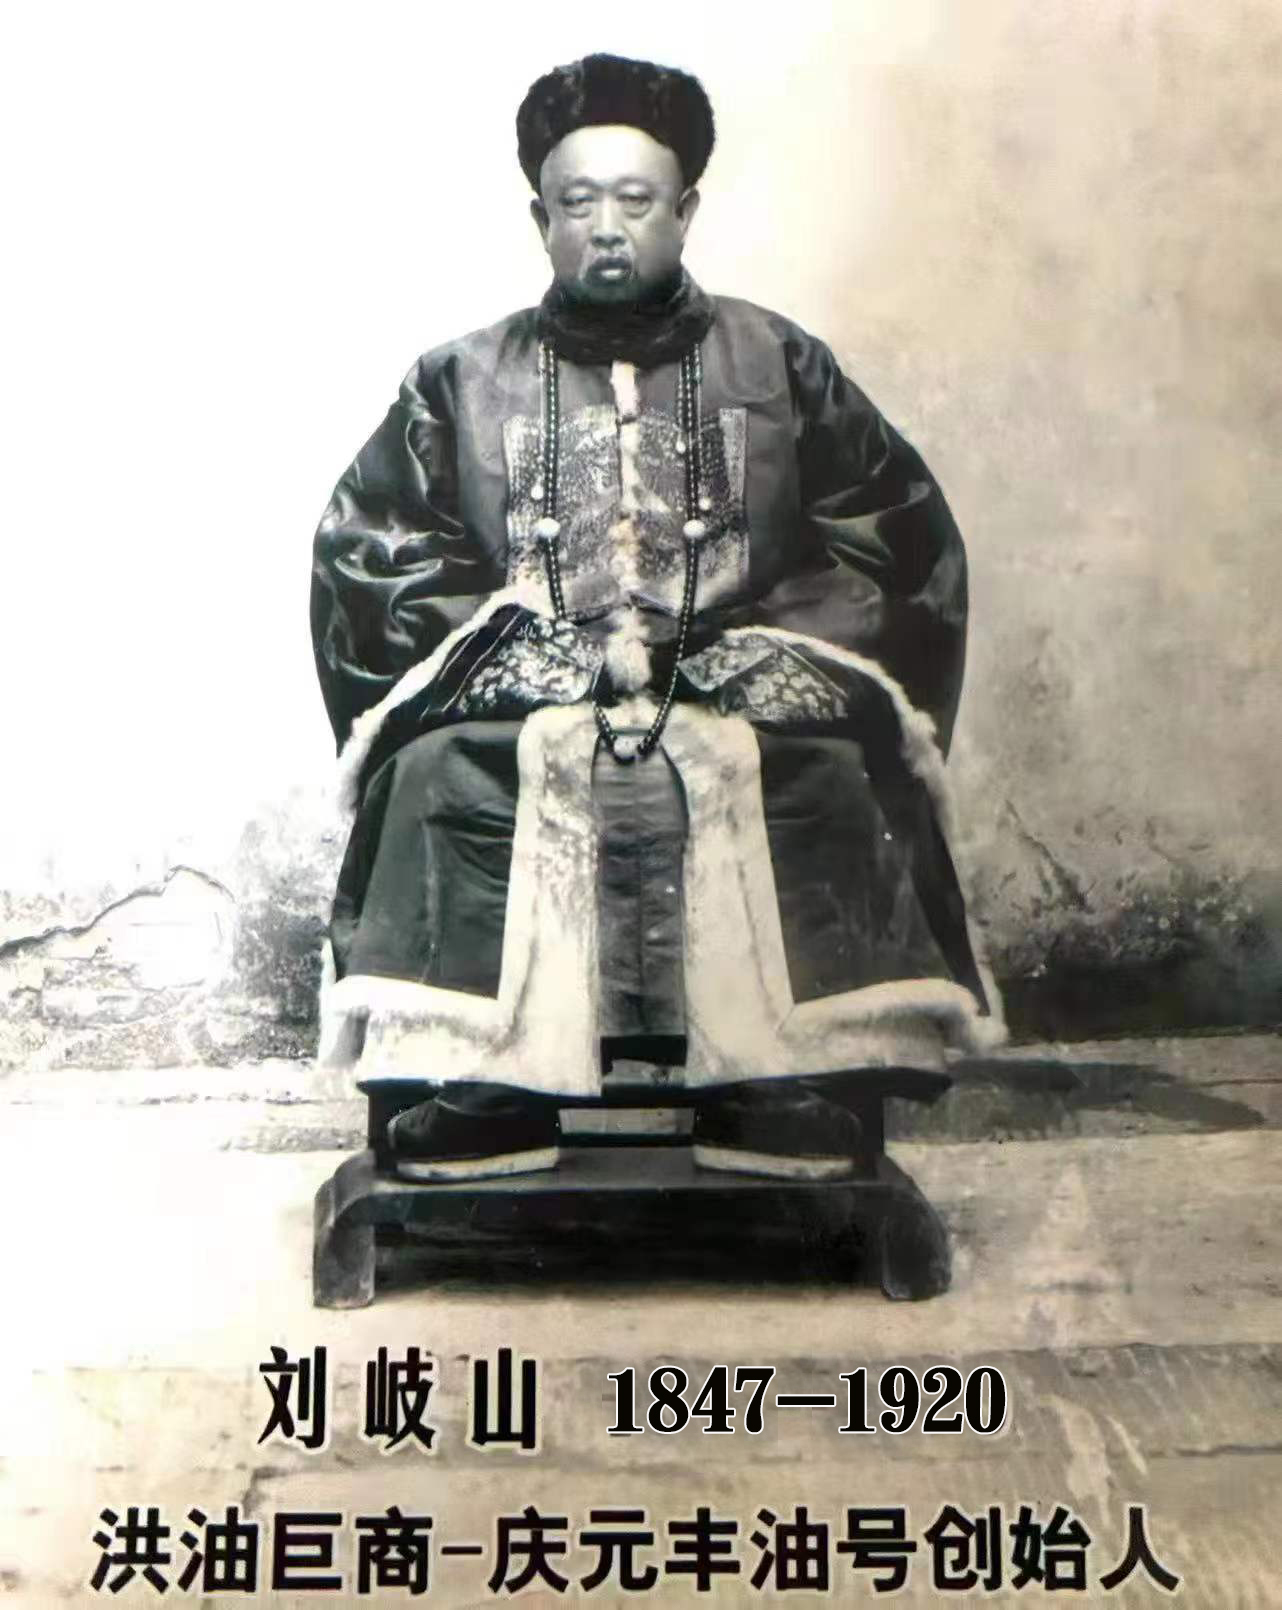 走近《一代洪商》“庆元丰”油号创始人原型刘岐山其人及家族